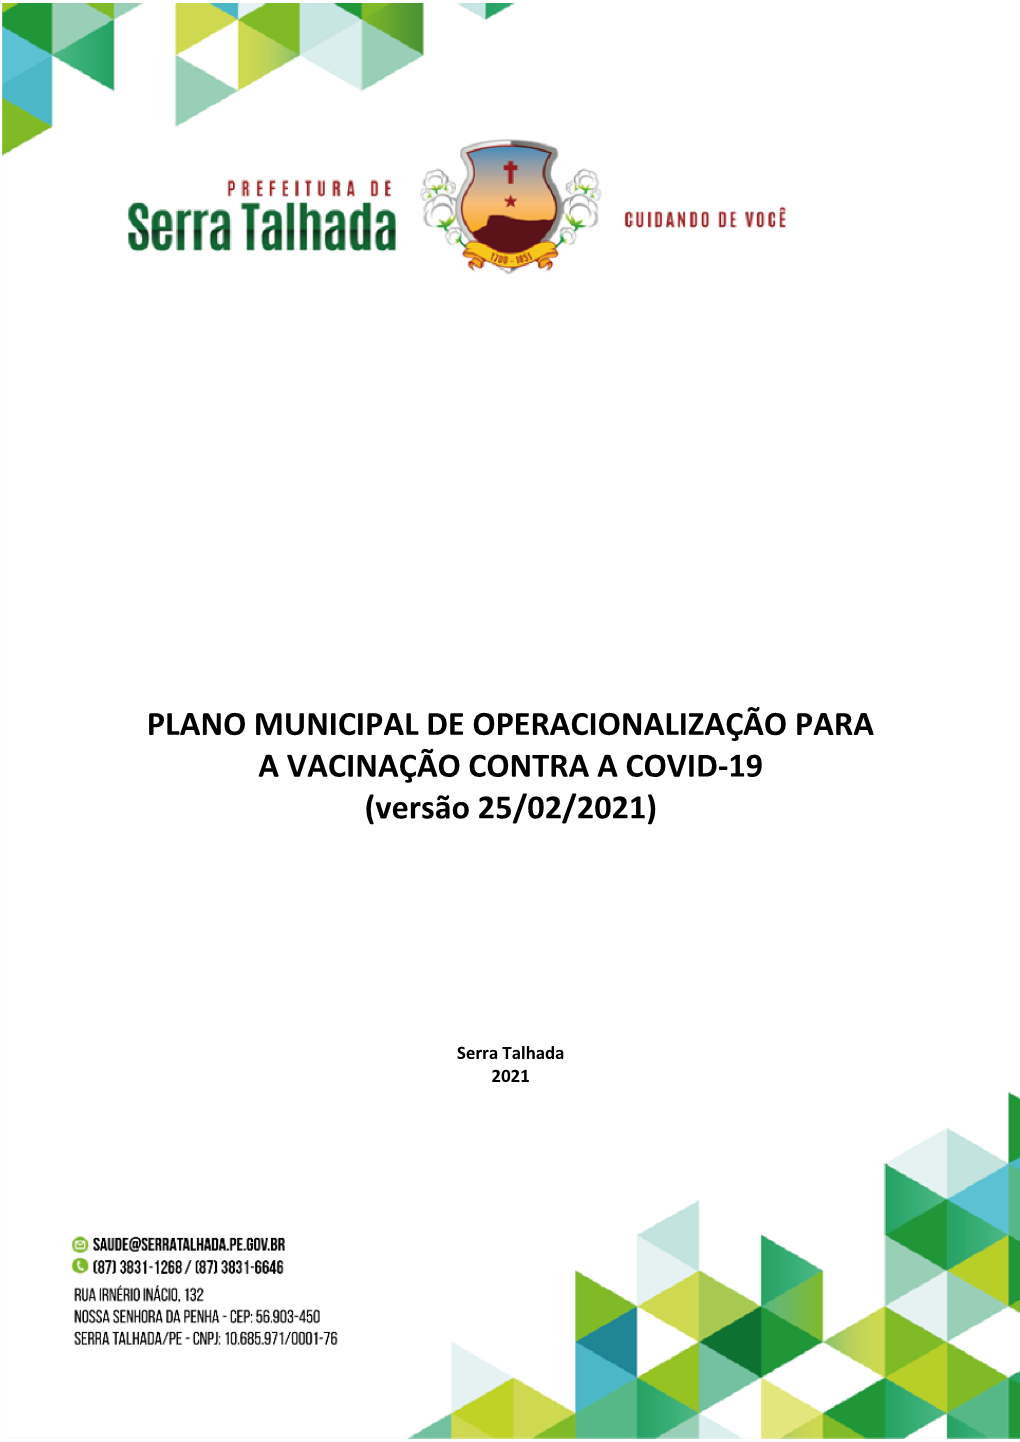 PLANO MUNICIPAL DE OPERACIONALIZAÇÃO PARA a VACINAÇÃO CONTRA a COVID-19 (Versão 25/02/2021)